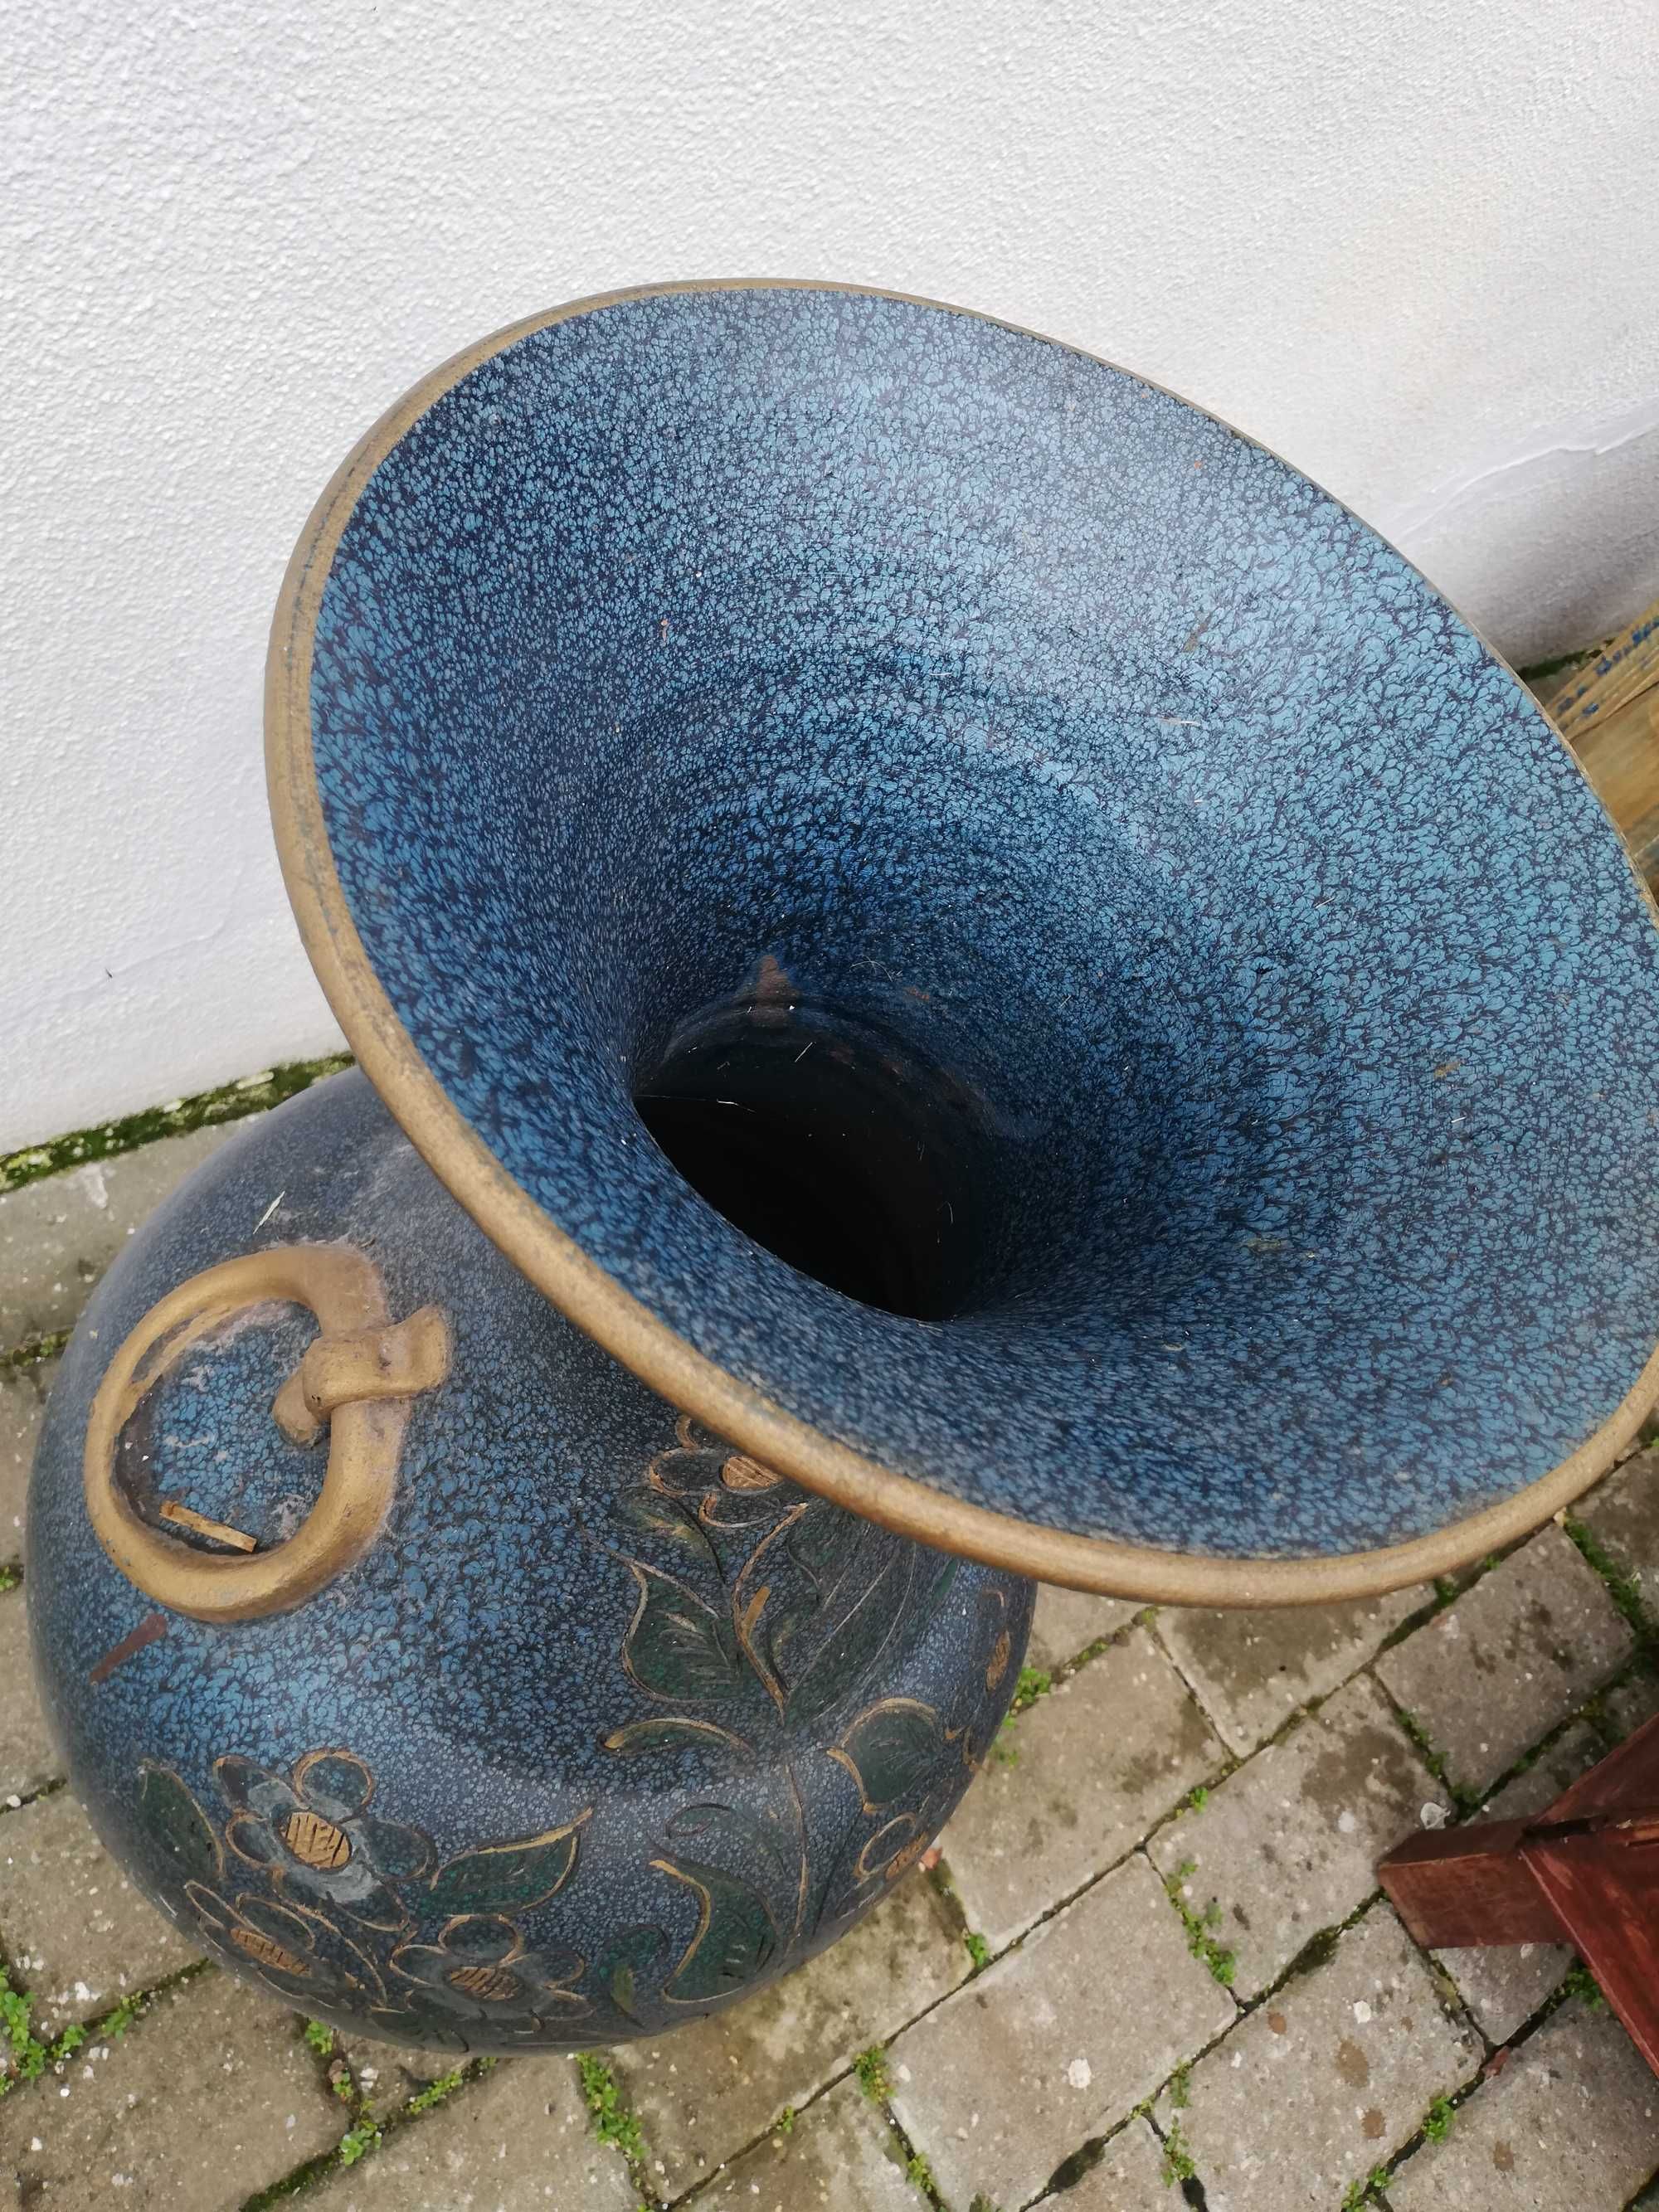 Jarrão antigo cerâmica